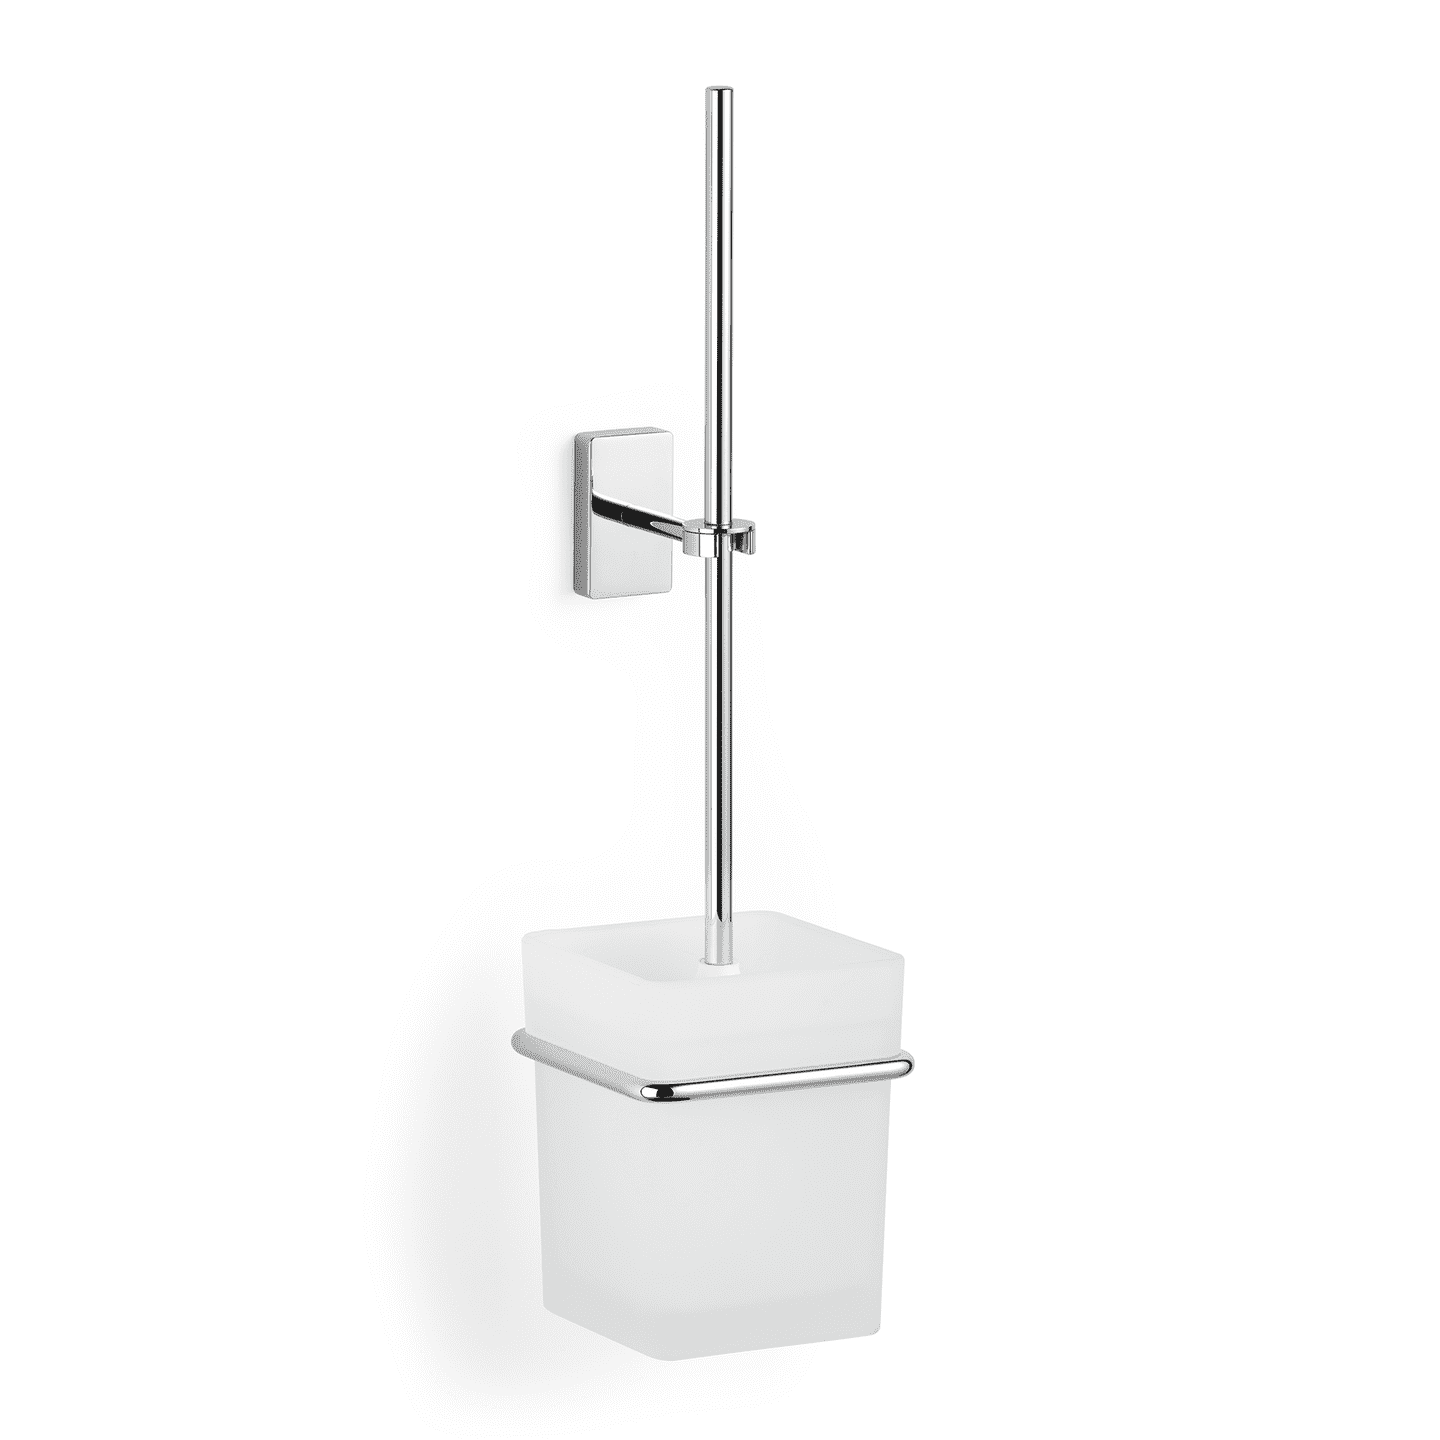 Versteck Toilette WC Bürste Safe [ND-55 10 07] - 24,90